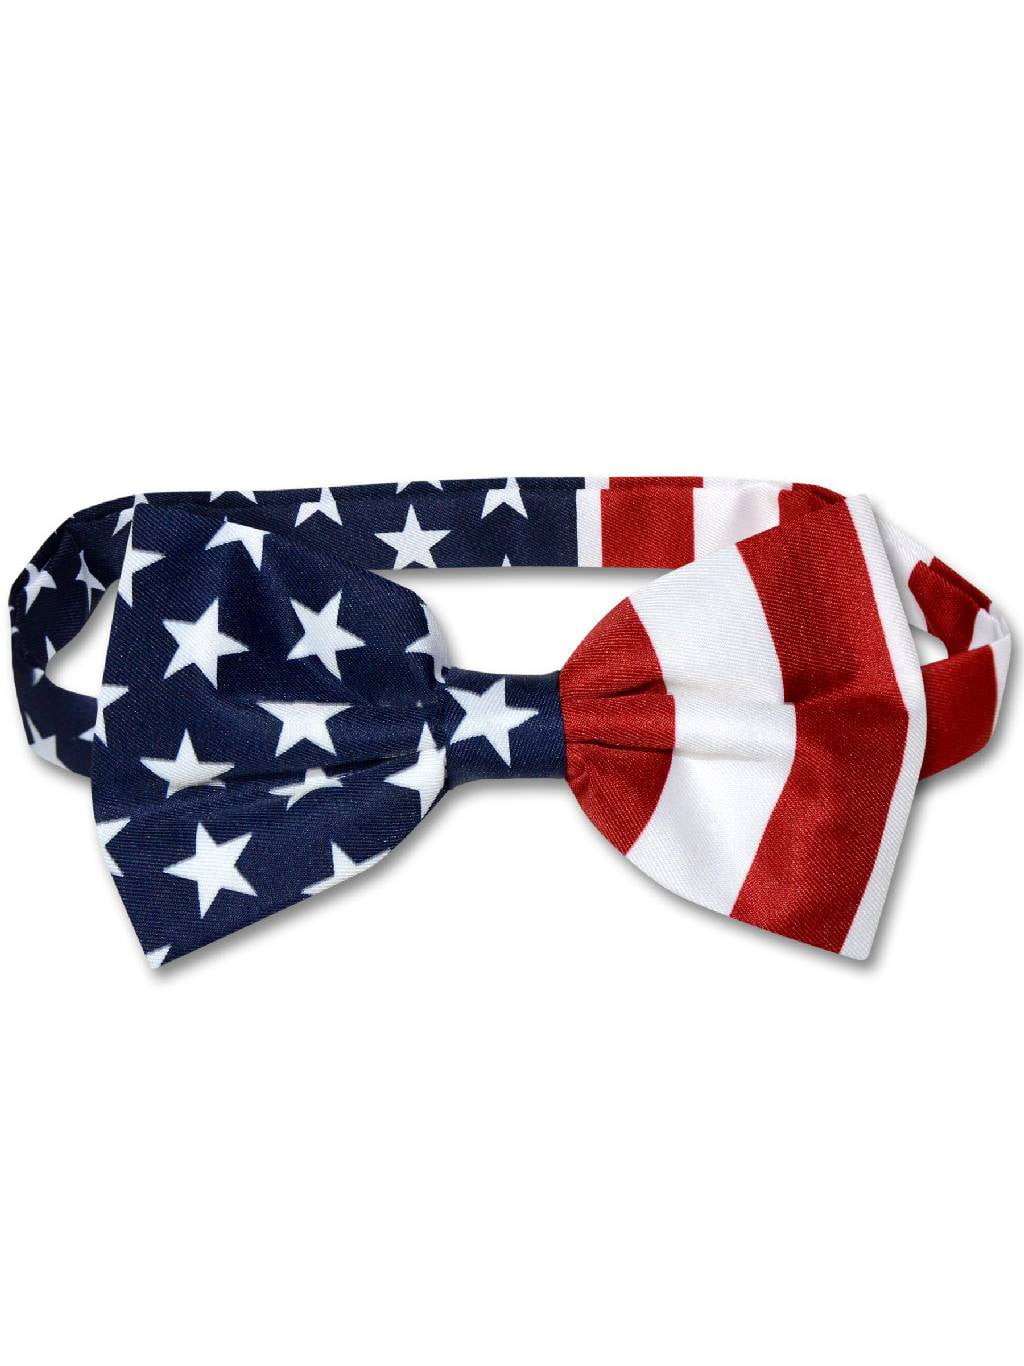 Men's American Flag Bow Tie Pre Tied USA Patriotic BOWTIE